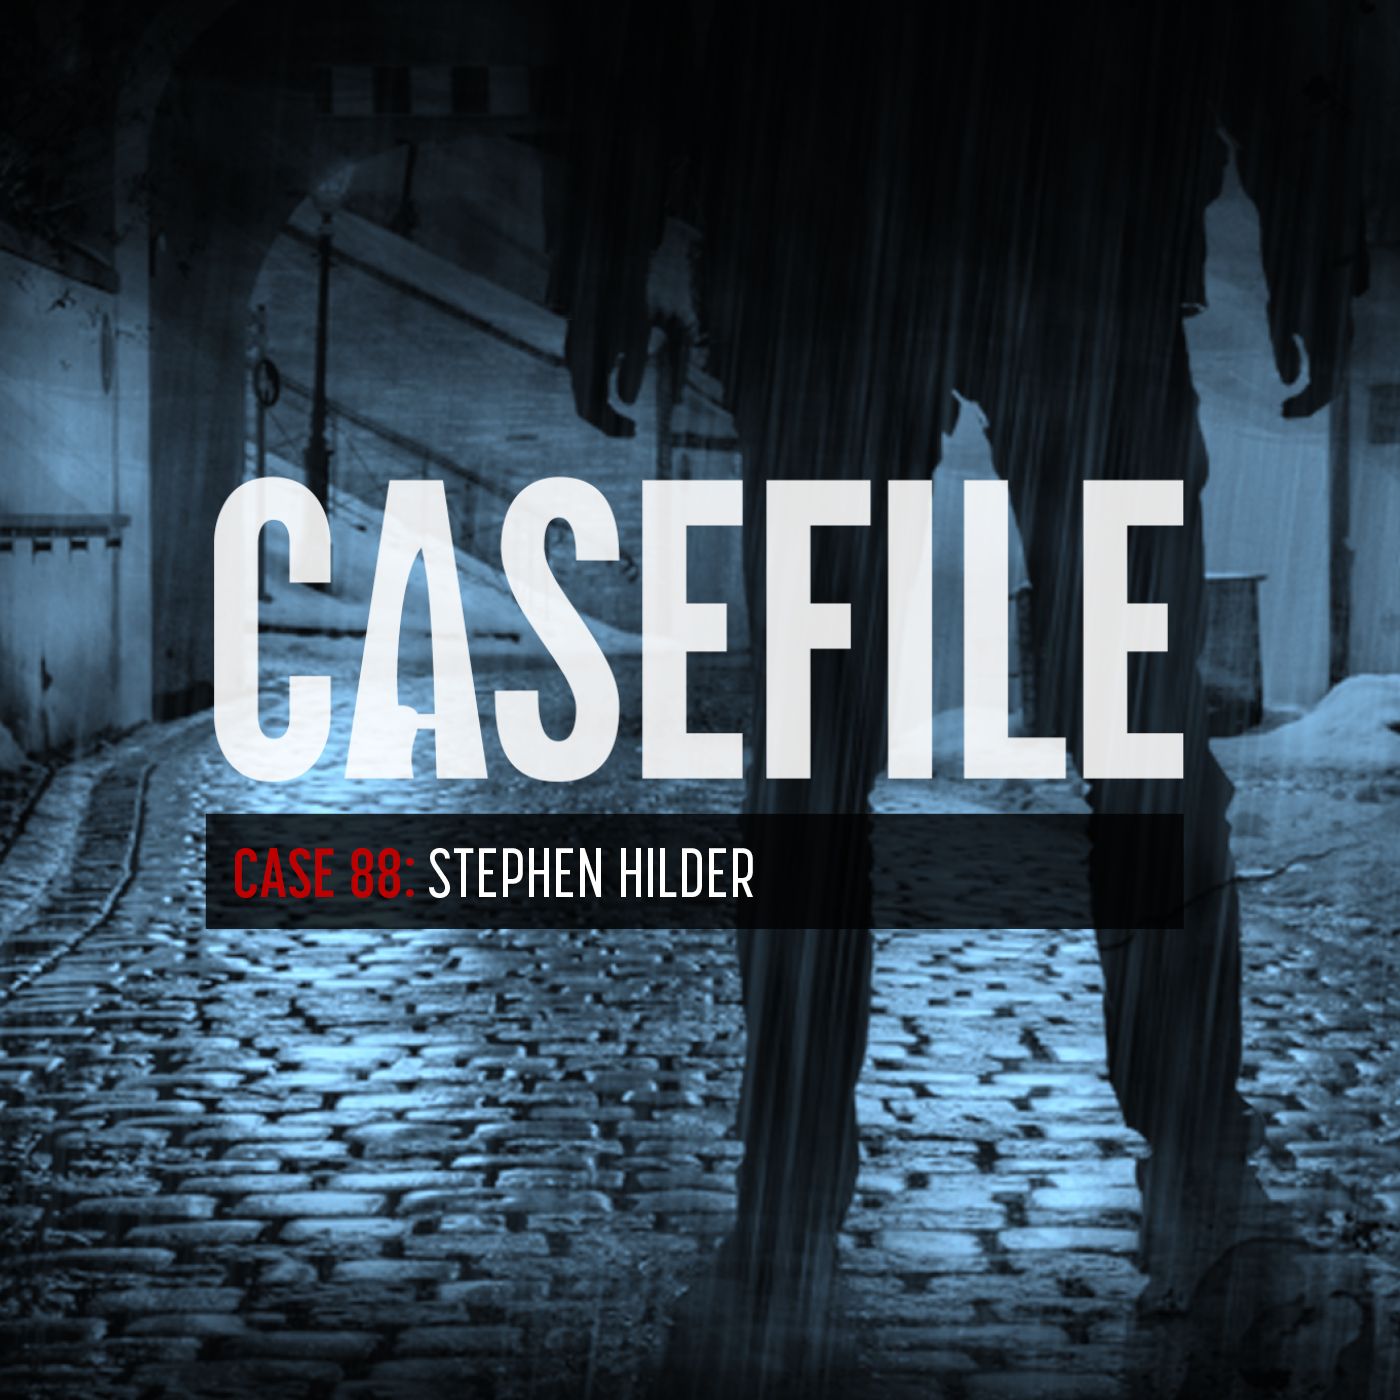 Case 88: Stephen Hilder